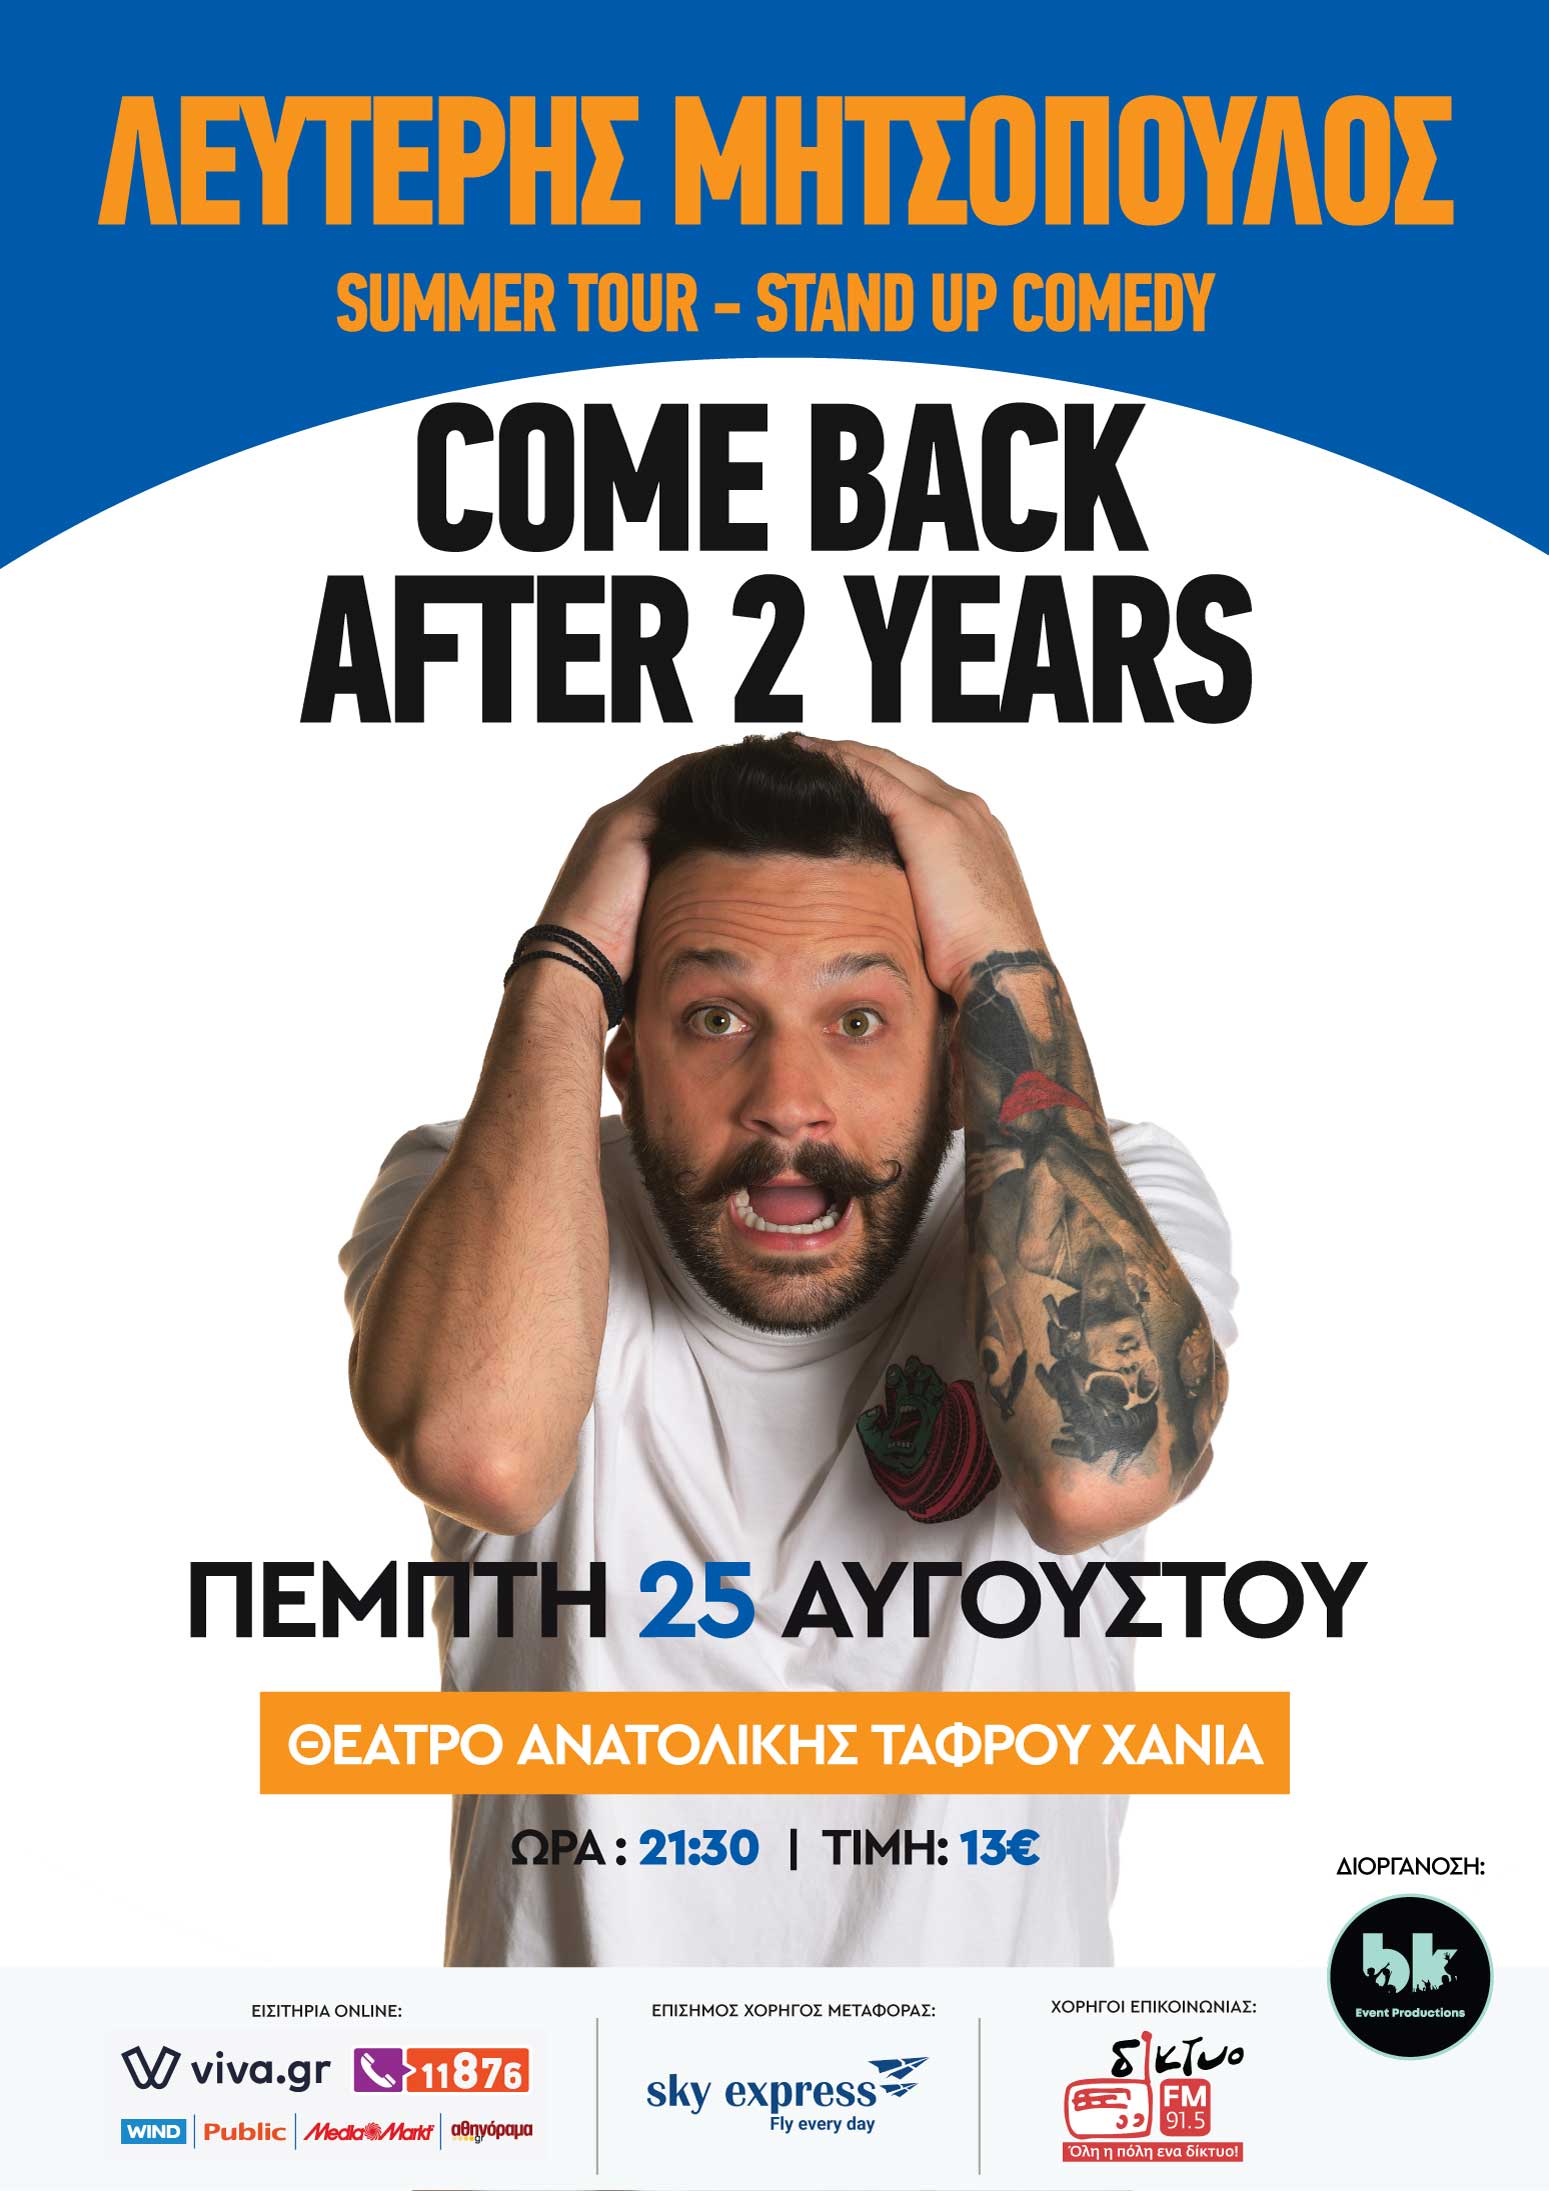 Λευτέρης Μητσόπουλος Come back after 2 years (ακυρώθηκε)